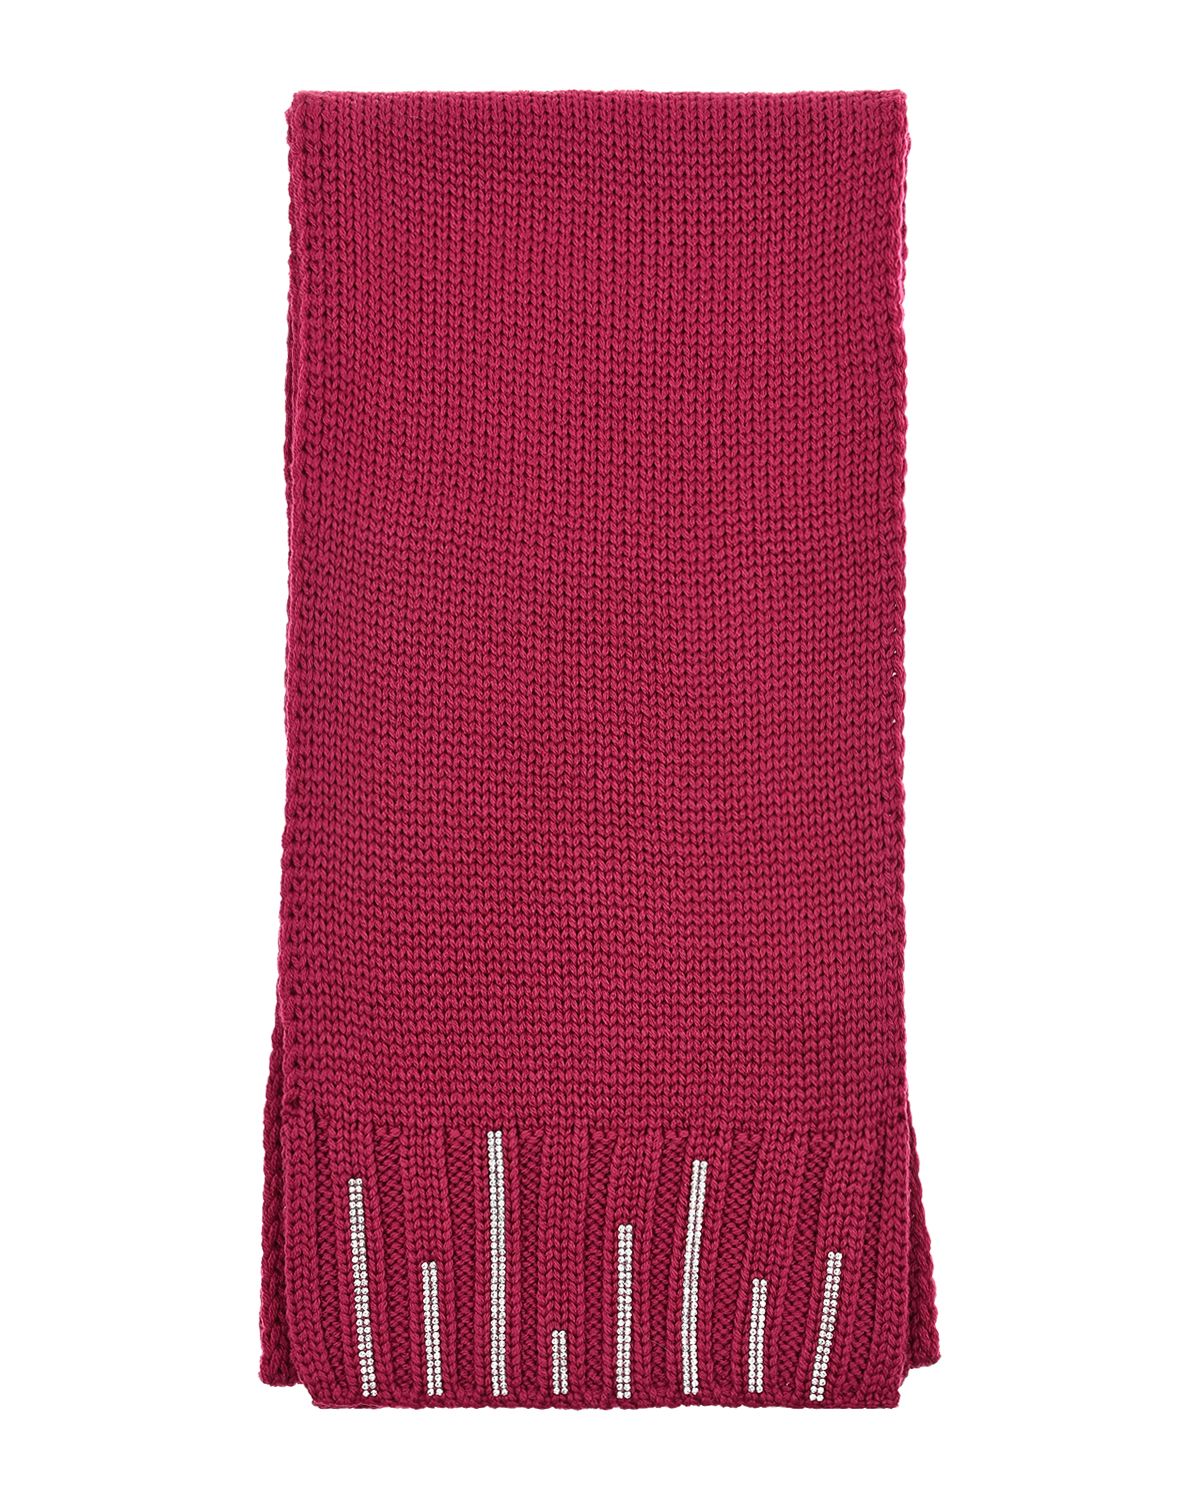 Шерстяной шарф со стразами Joli Bebe детский, размер unica, цвет розовый - фото 2